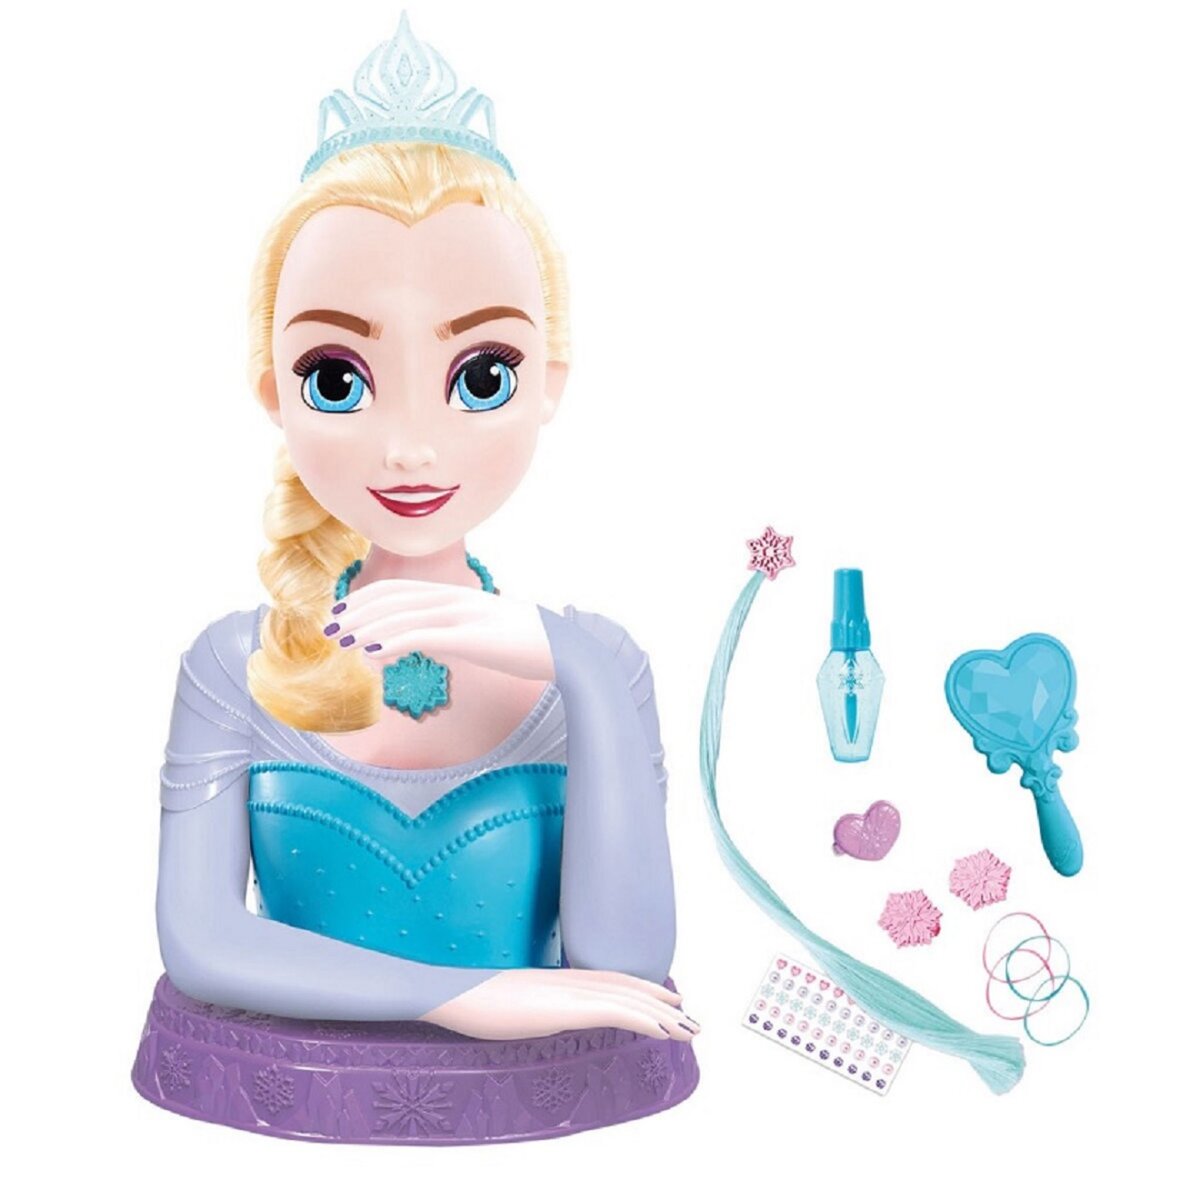 Promo Disney tête à coiffer deluxe elsa - la reine des neiges 2